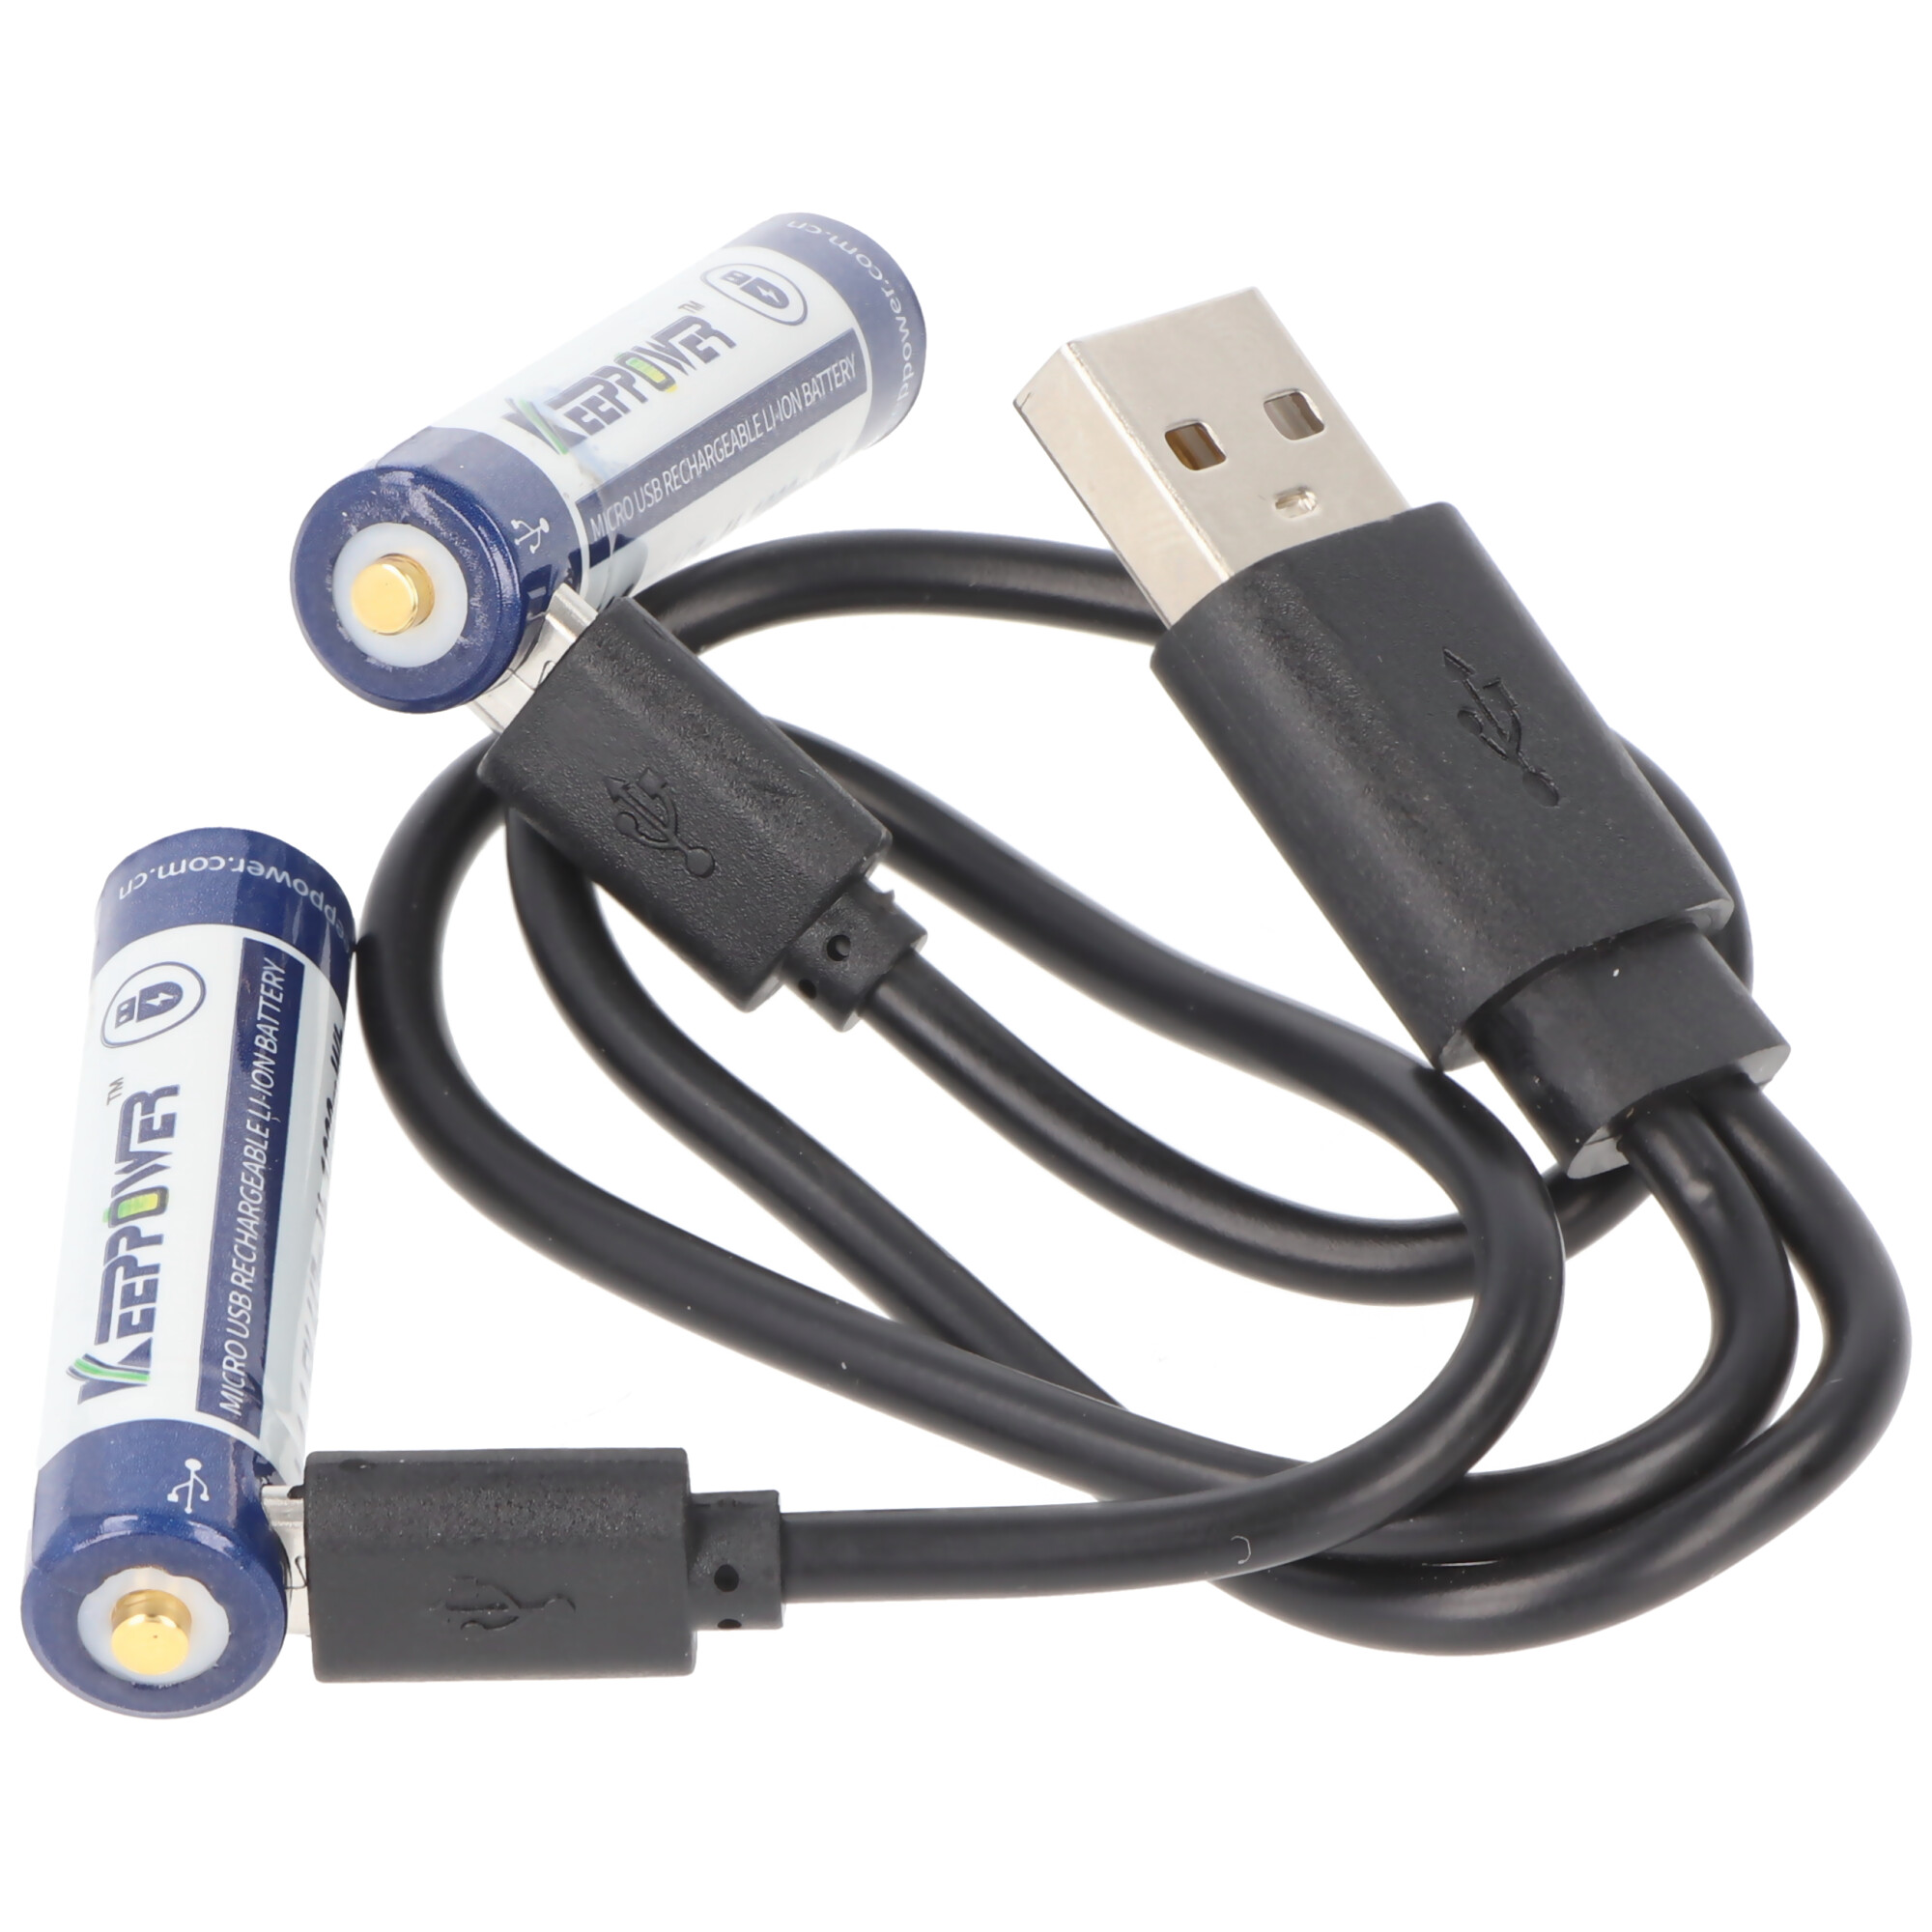 ANSMANN Pile rechargeable Li-Ion 16340 avec fiche micro-USB